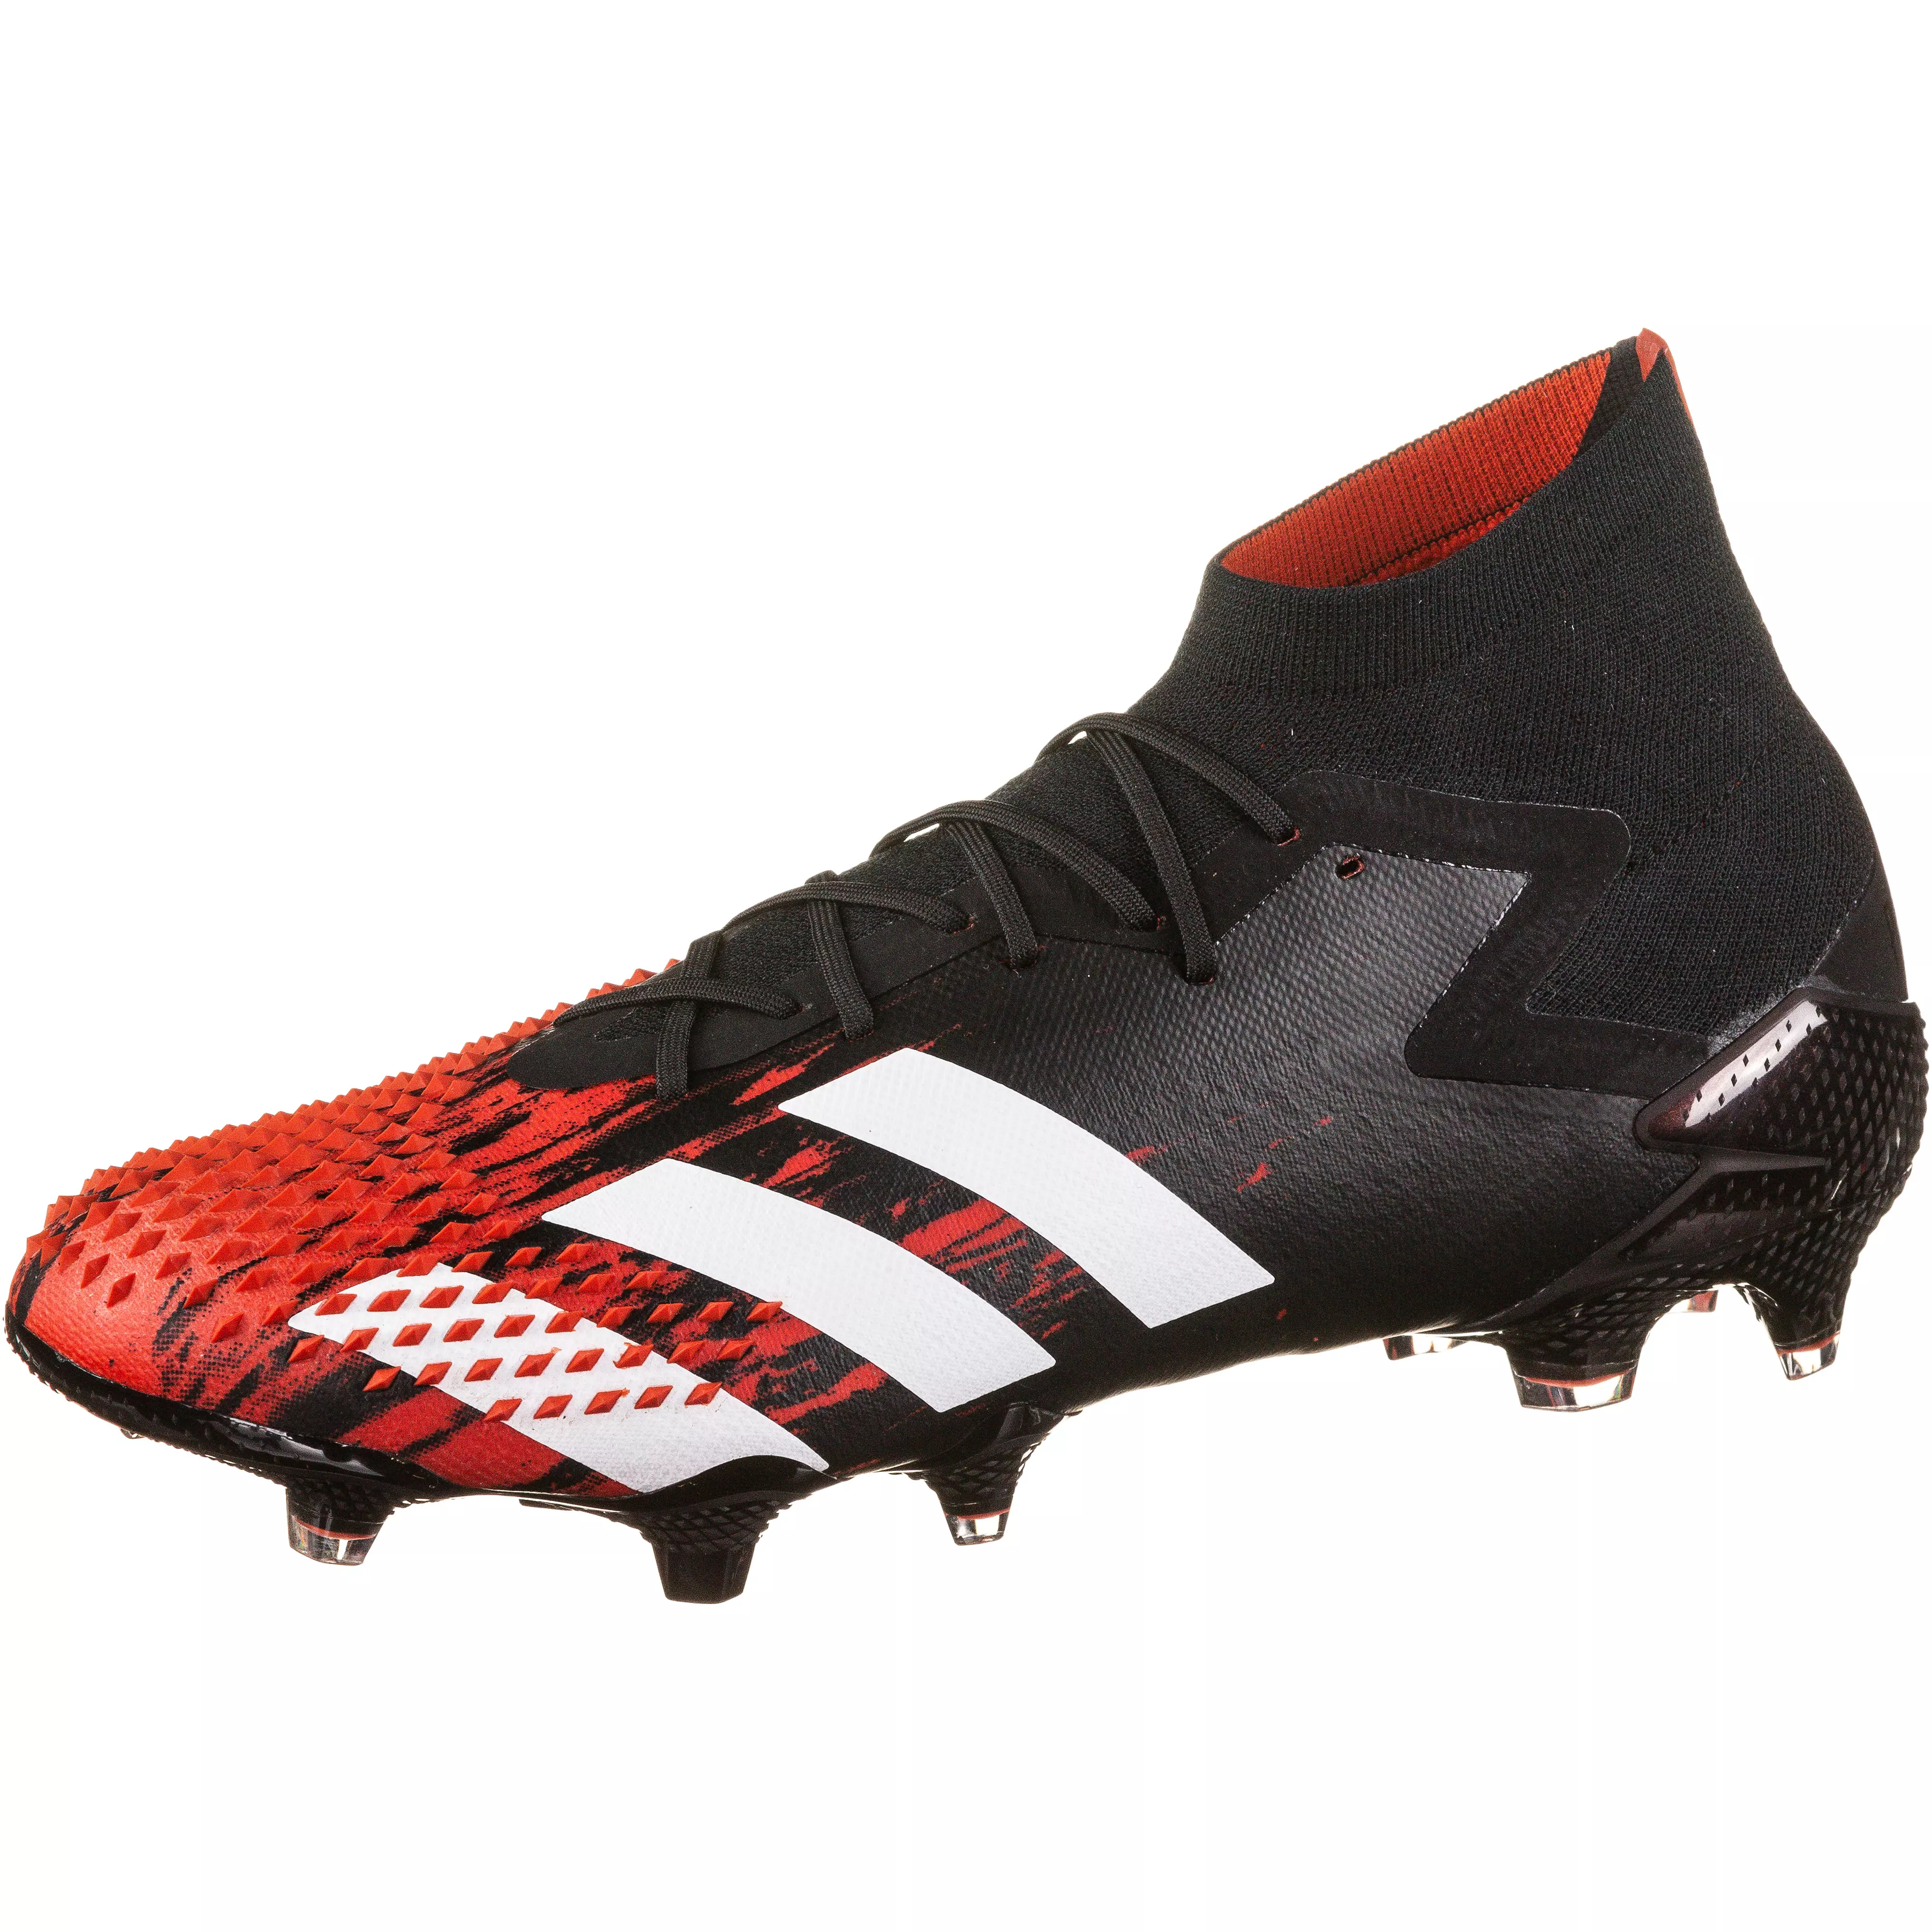 Adidas Predator Mutator 20 1 Fg Fussballschuhe Core Black Im Online Shop Von Sportscheck Kaufen